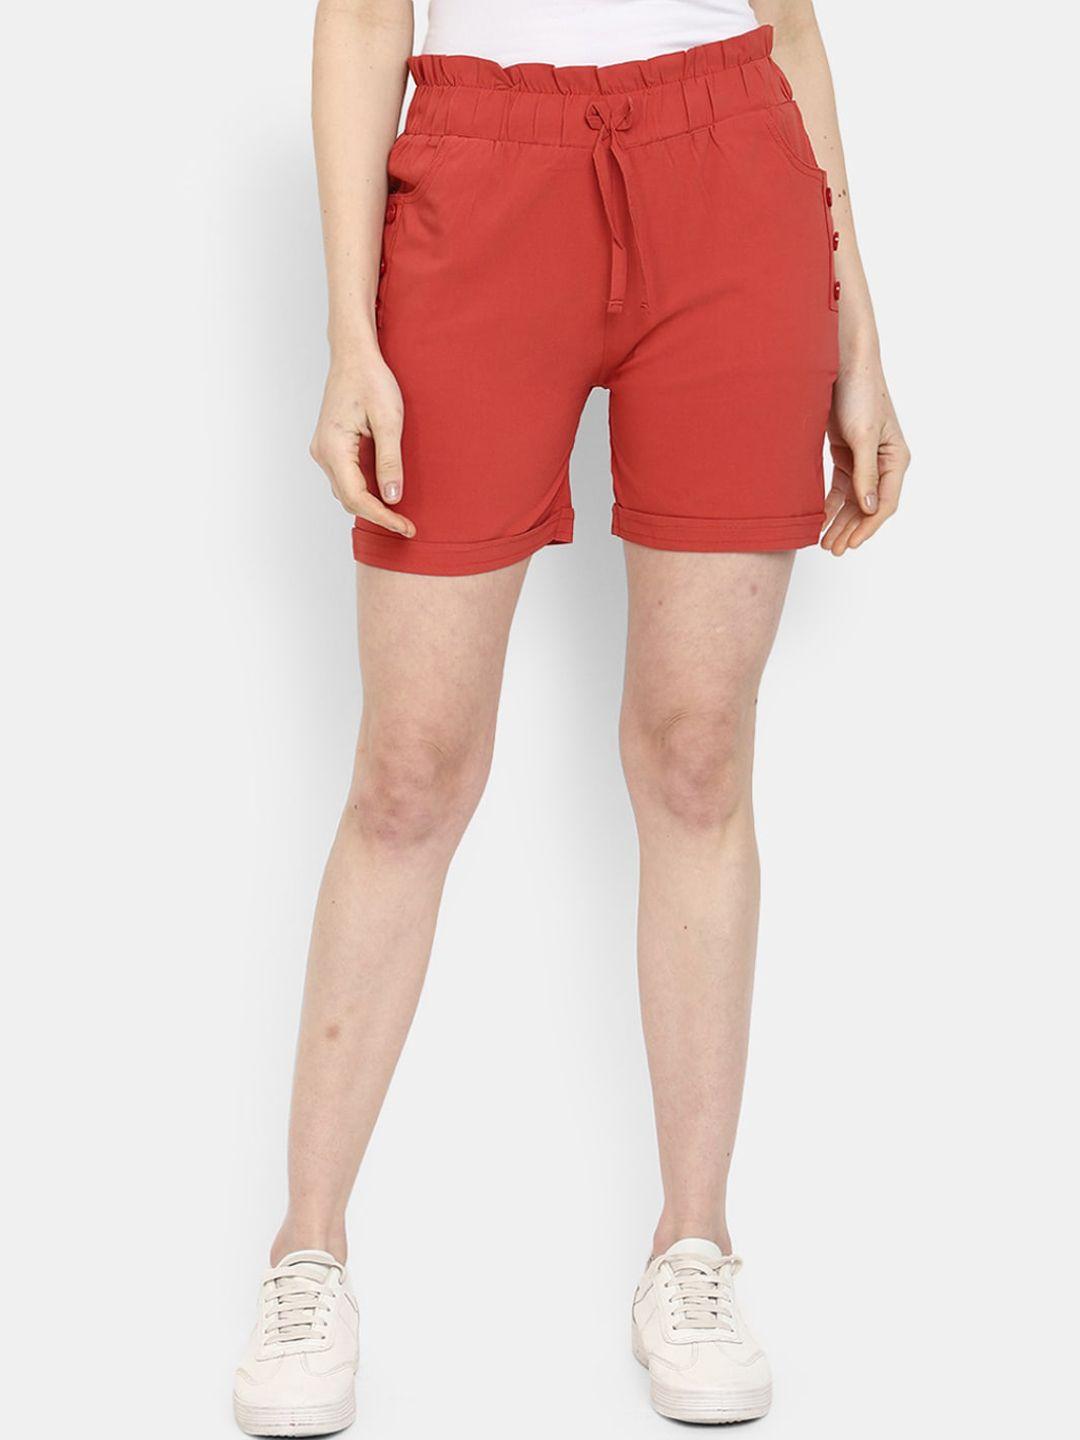 v-mart women mid-rise cotton shorts